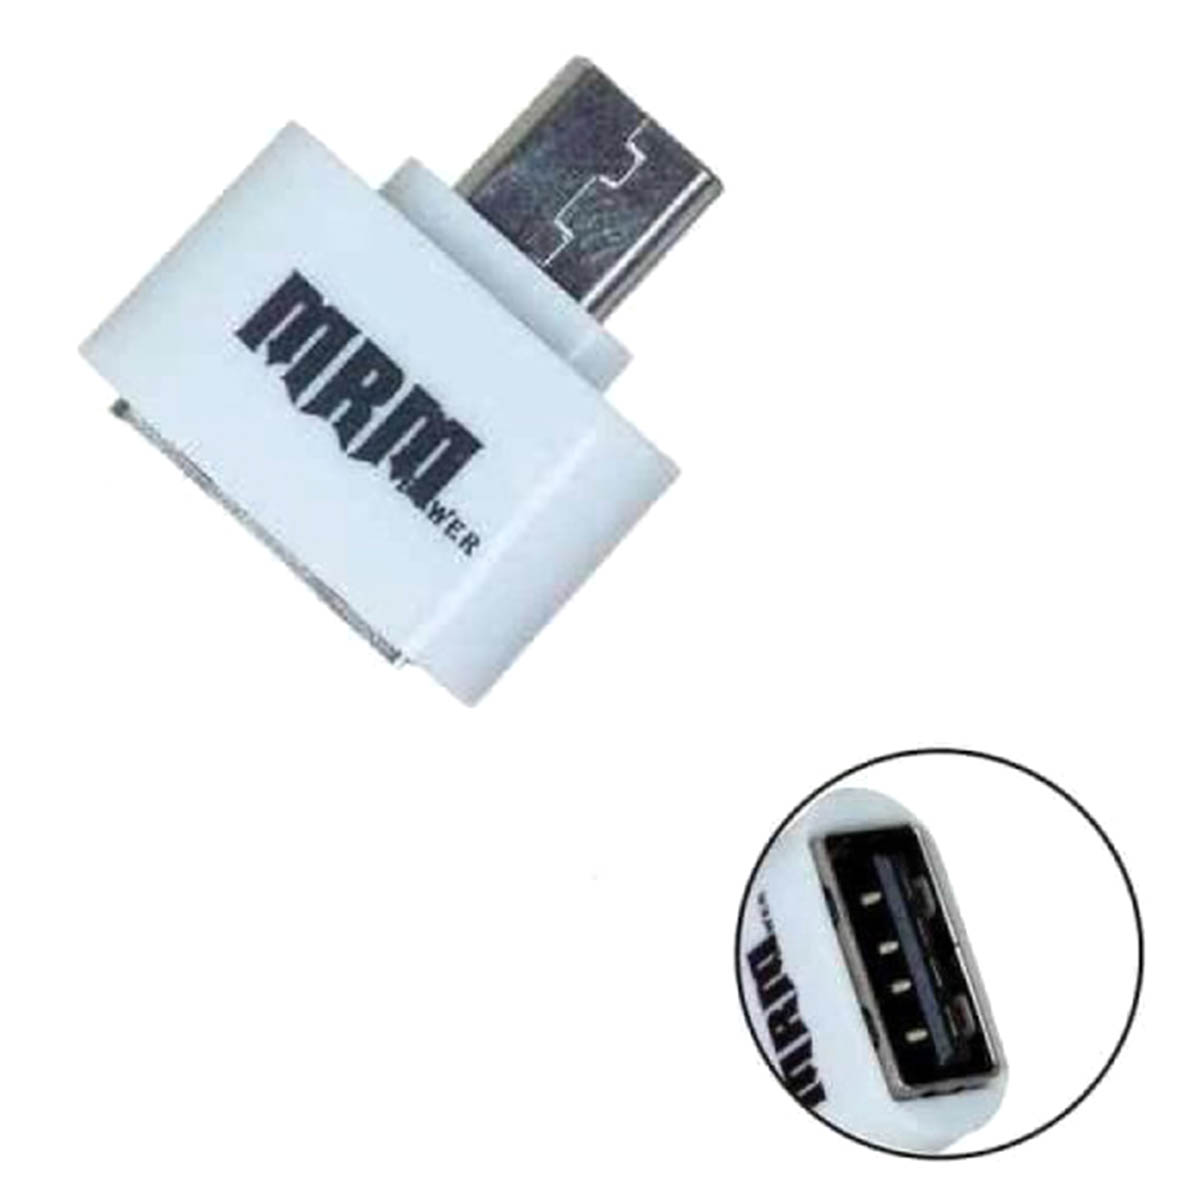 Переходник, адаптер, конвертер OTG на Micro USB 2.1A, C&Q CQ-04, T04, цвет белый